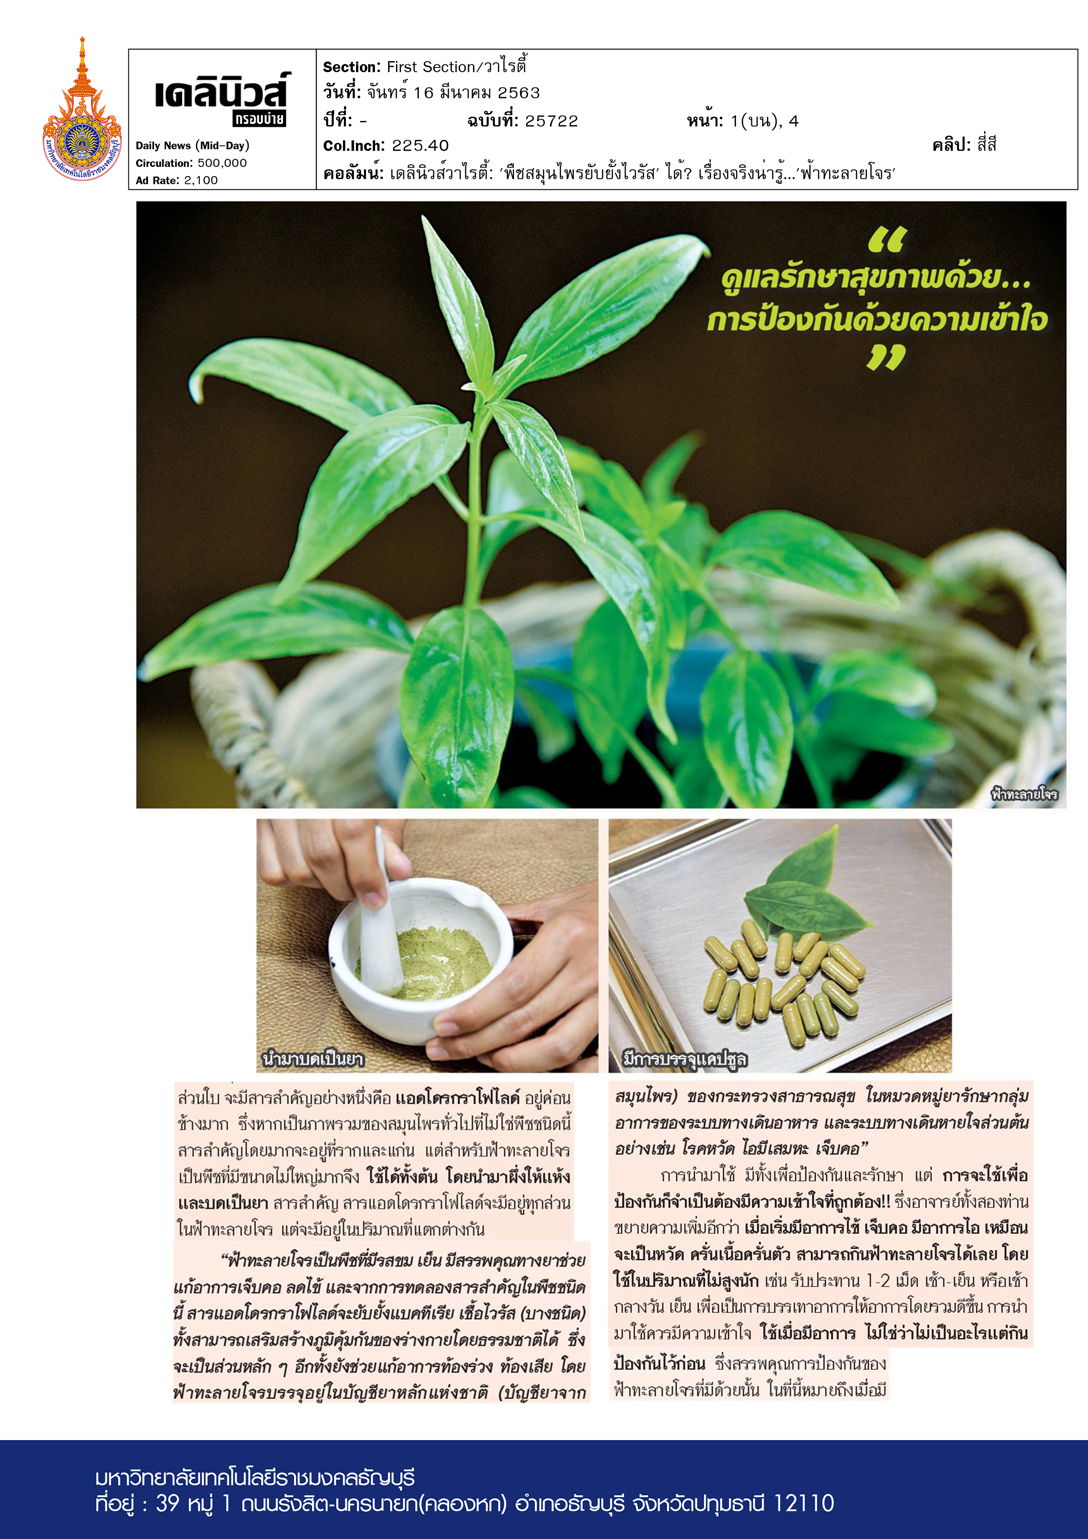 Daily News Variety Column: 'Medicinal herb stopping Covid-19?'….  'Fah-talai-jone'